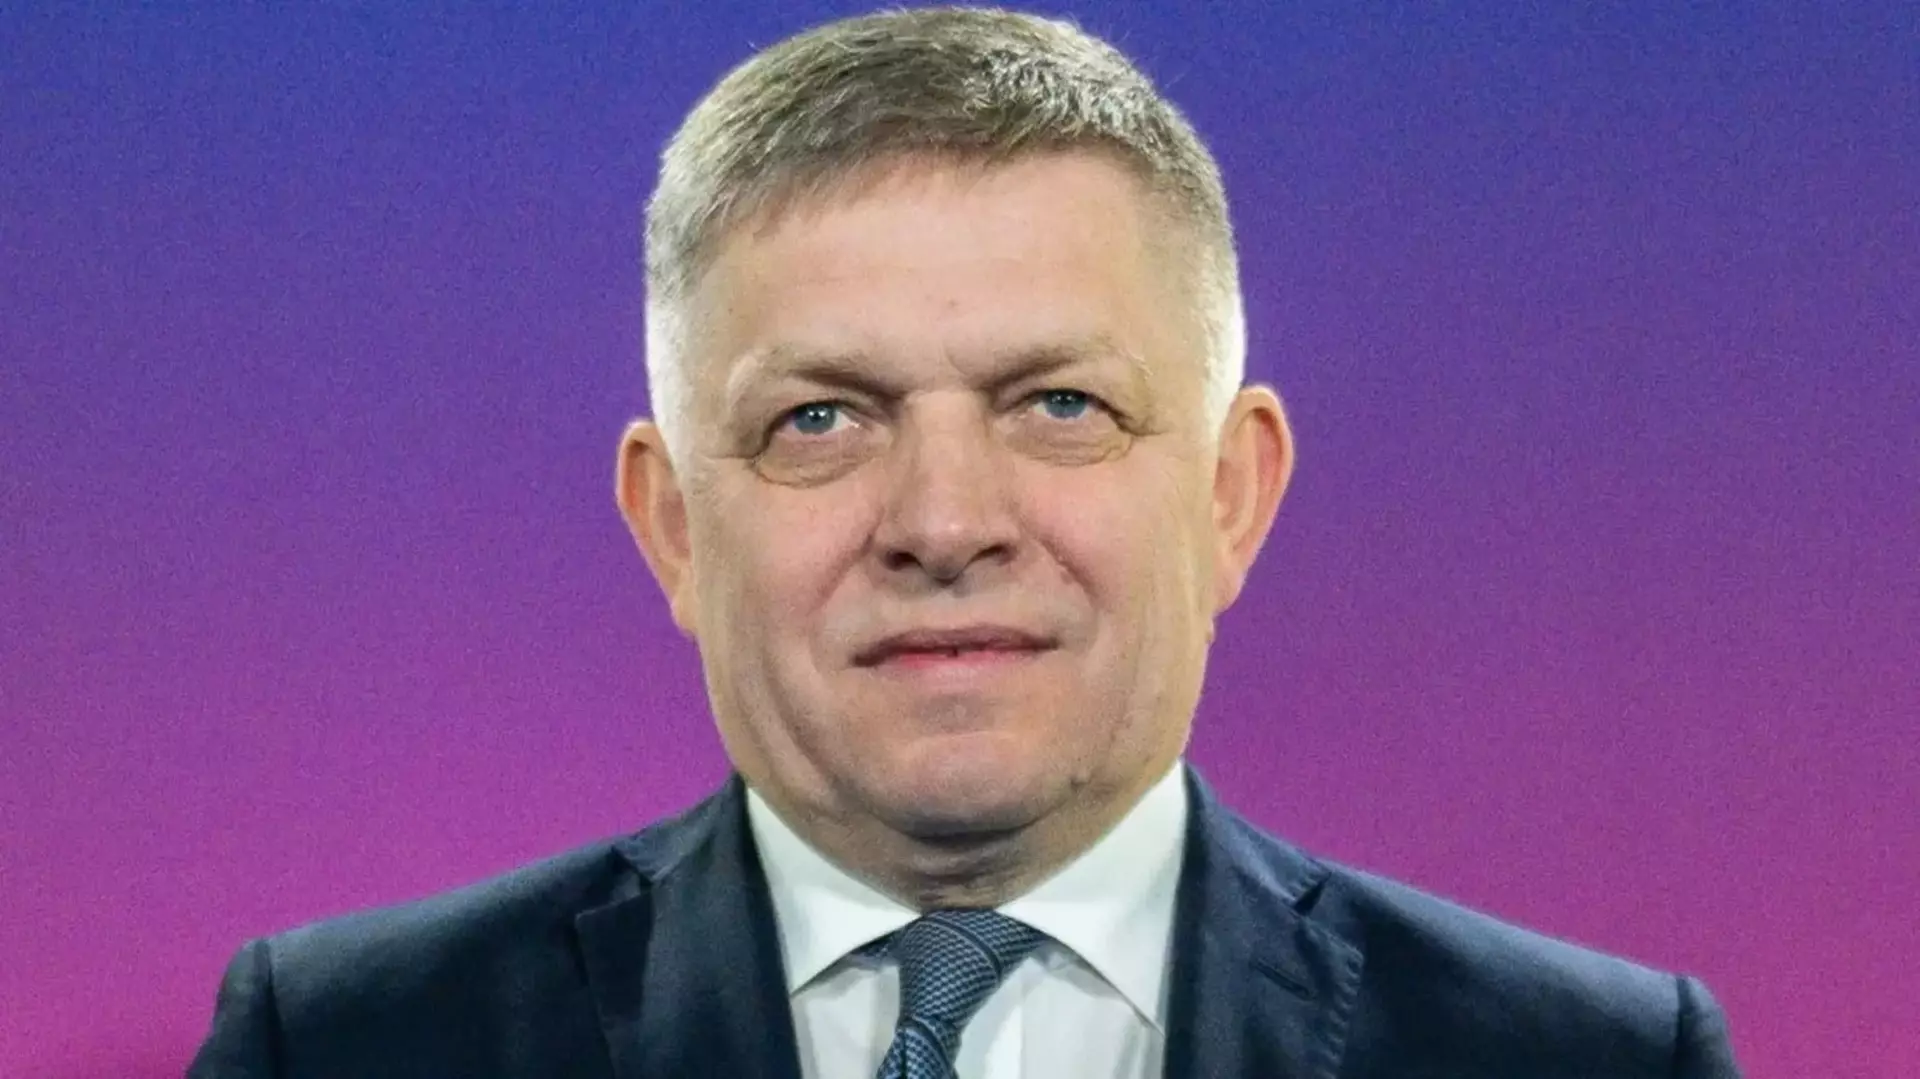 Состояние раненого премьер-министра Словакии остается тяжелым